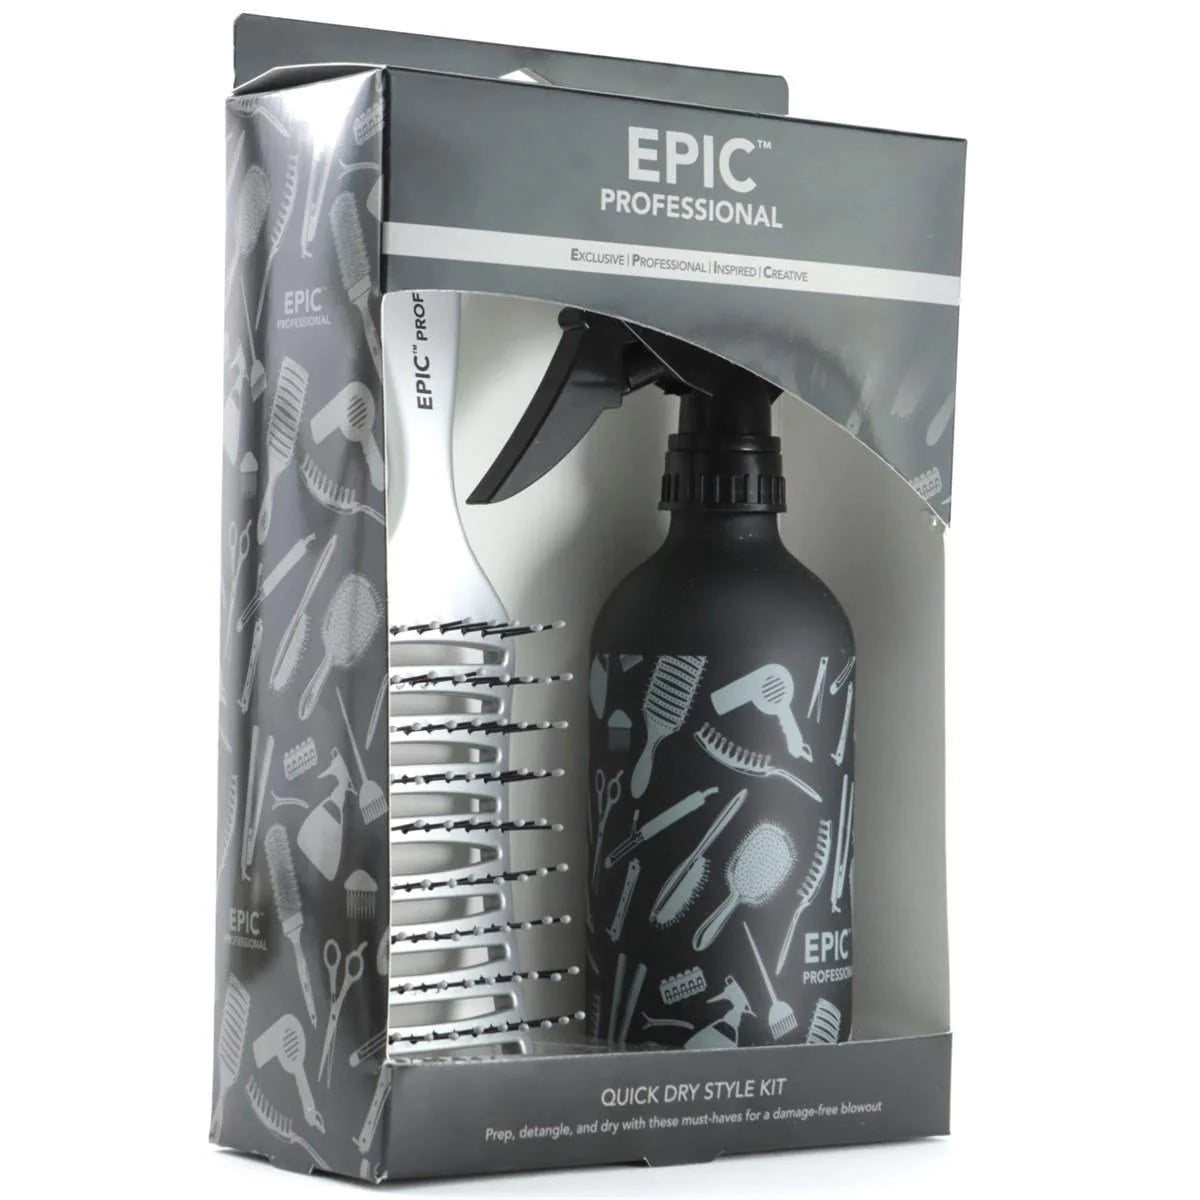 Epic - Professional brush and vaporizer set